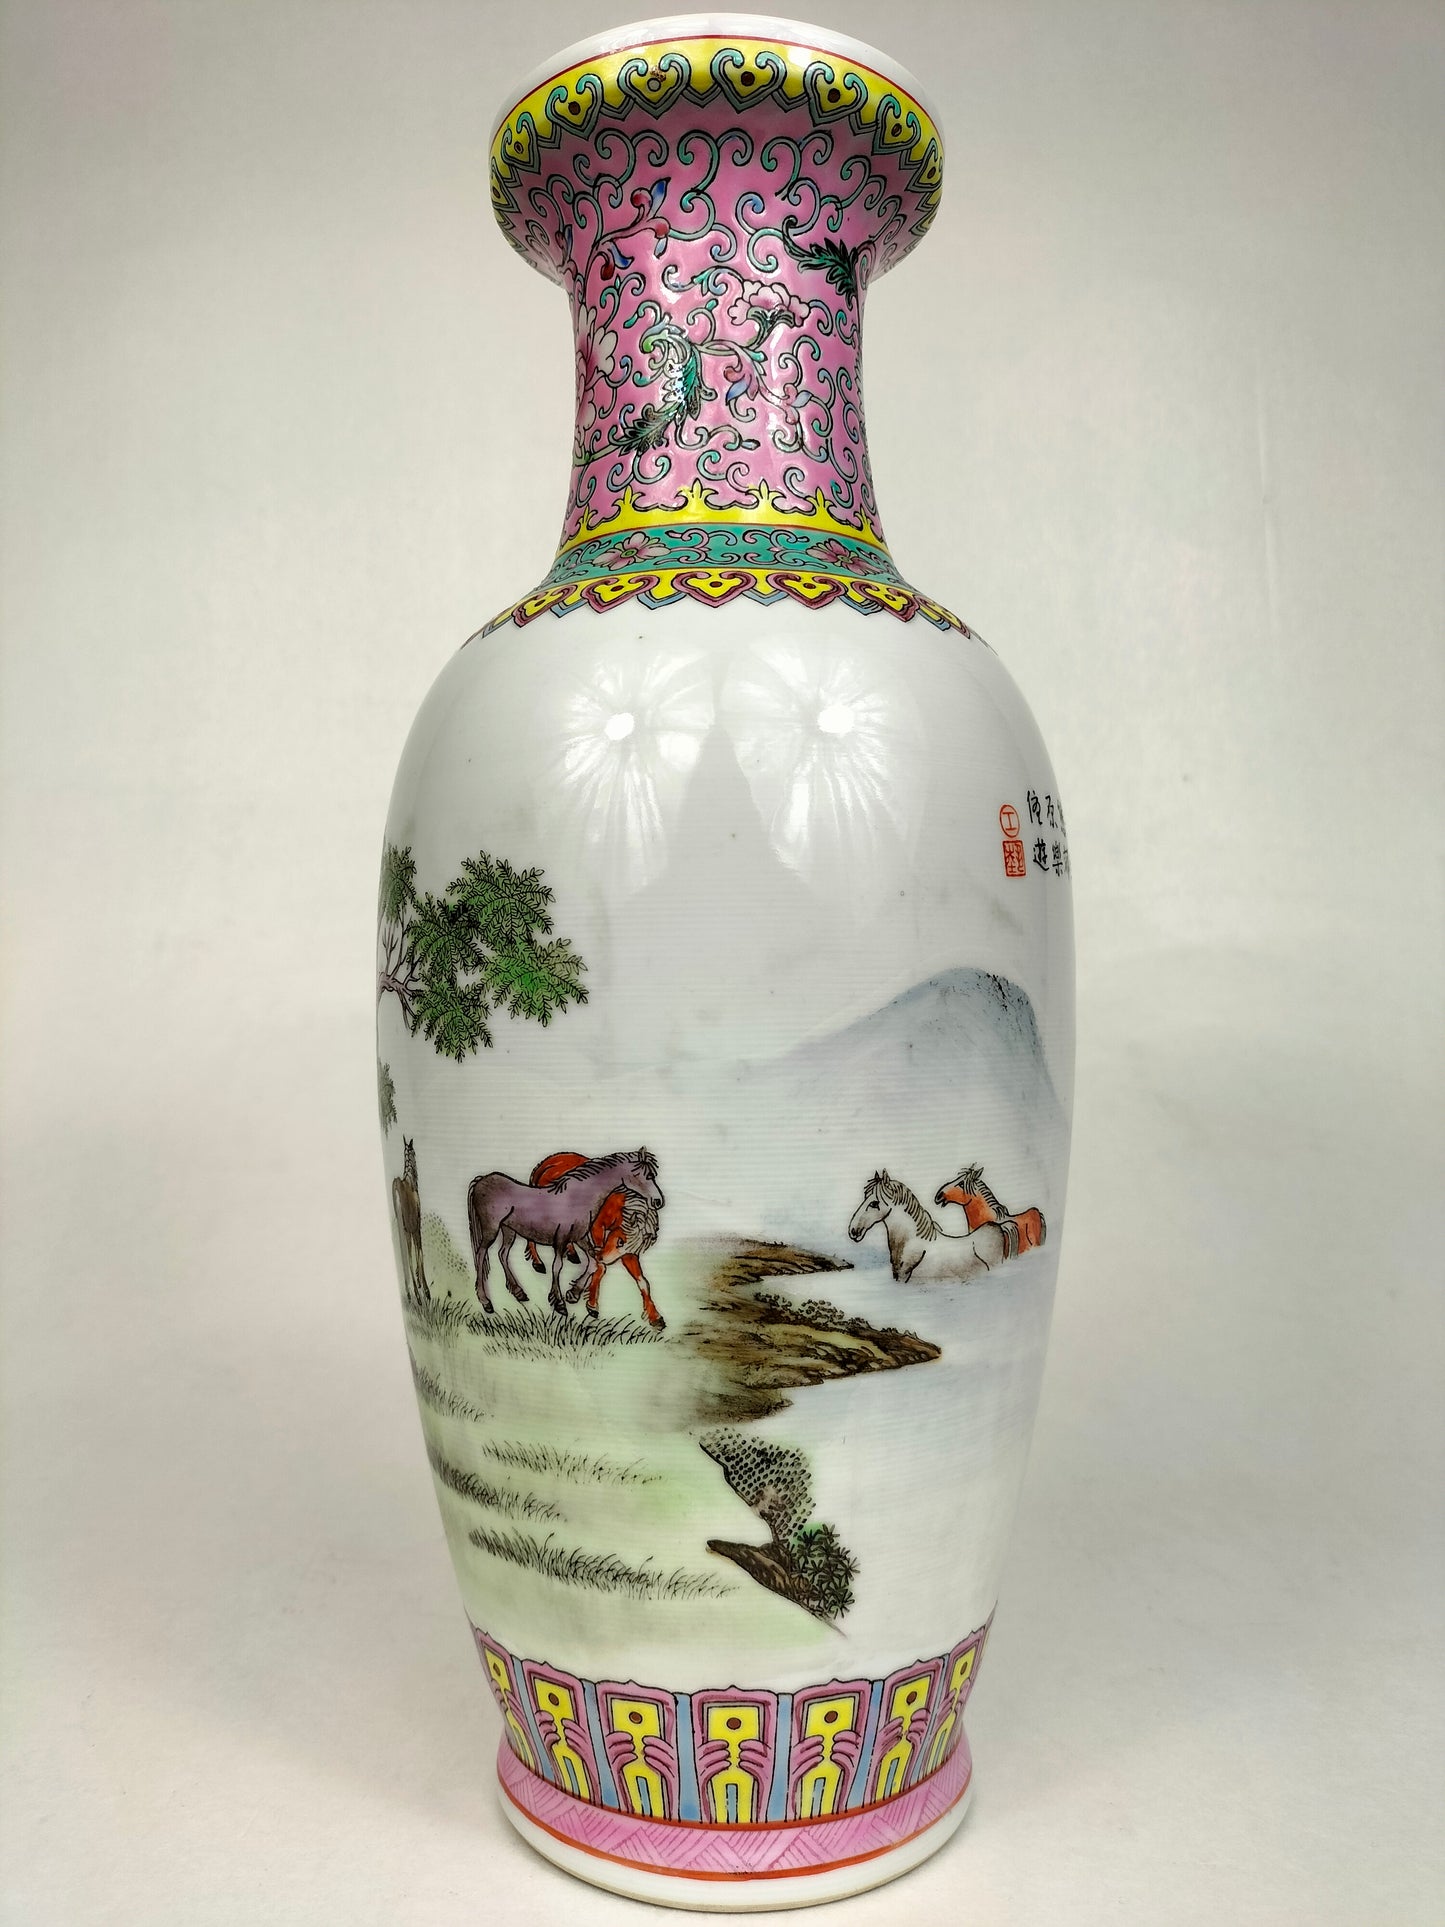 Bình hoa hồng gia đình Trung Quốc được trang trí hình ngựa trong phong cảnh // Jingdezhen - thế kỷ 20